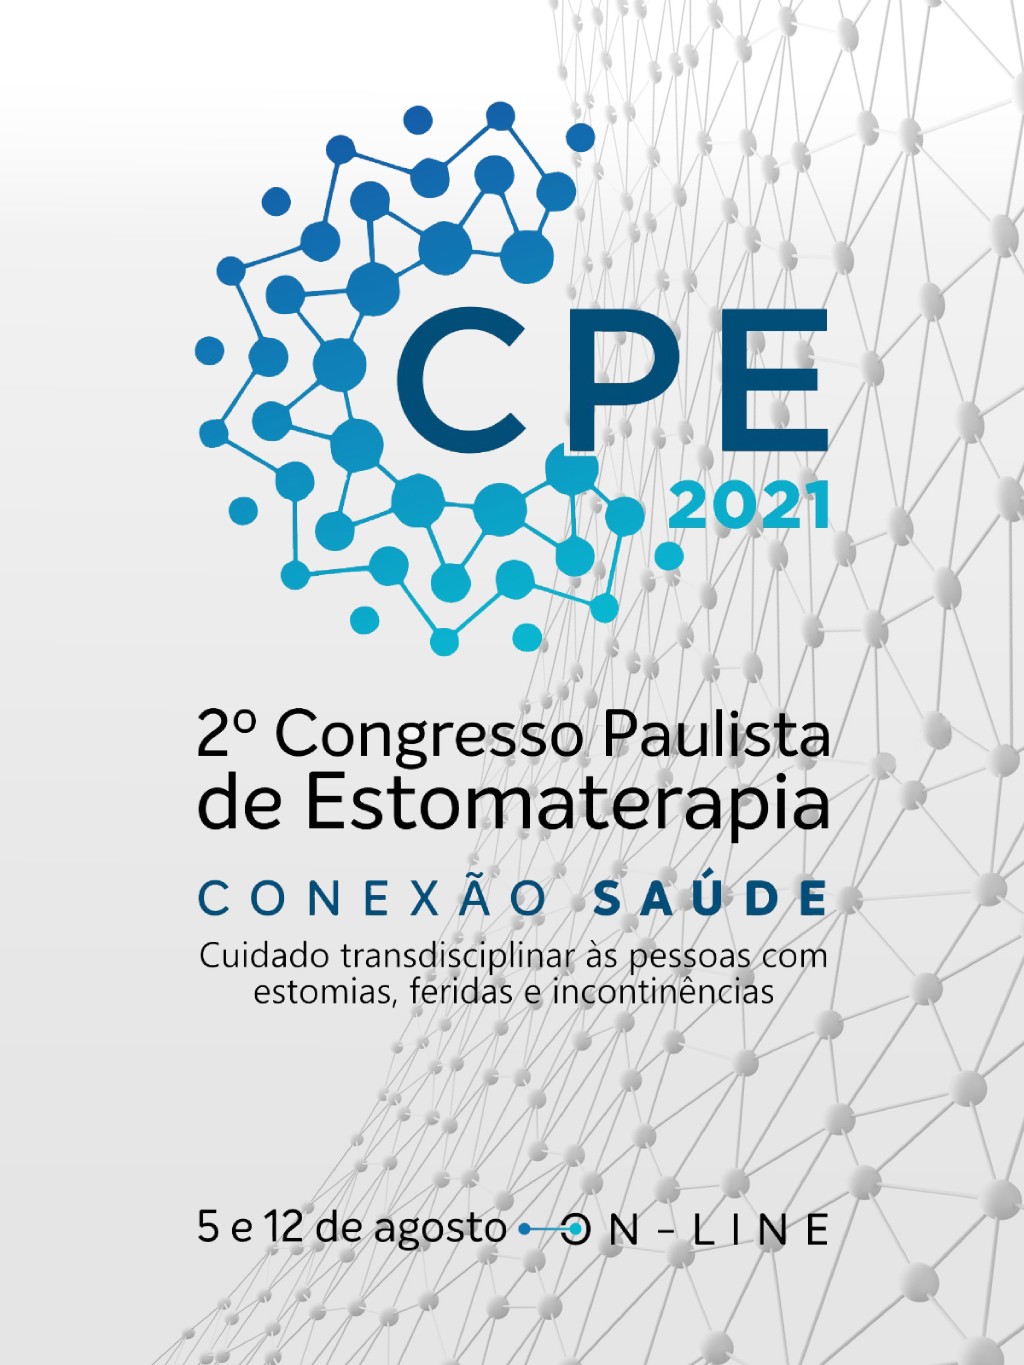 					View 2021: Congresso Paulista de Estomaterapia
				